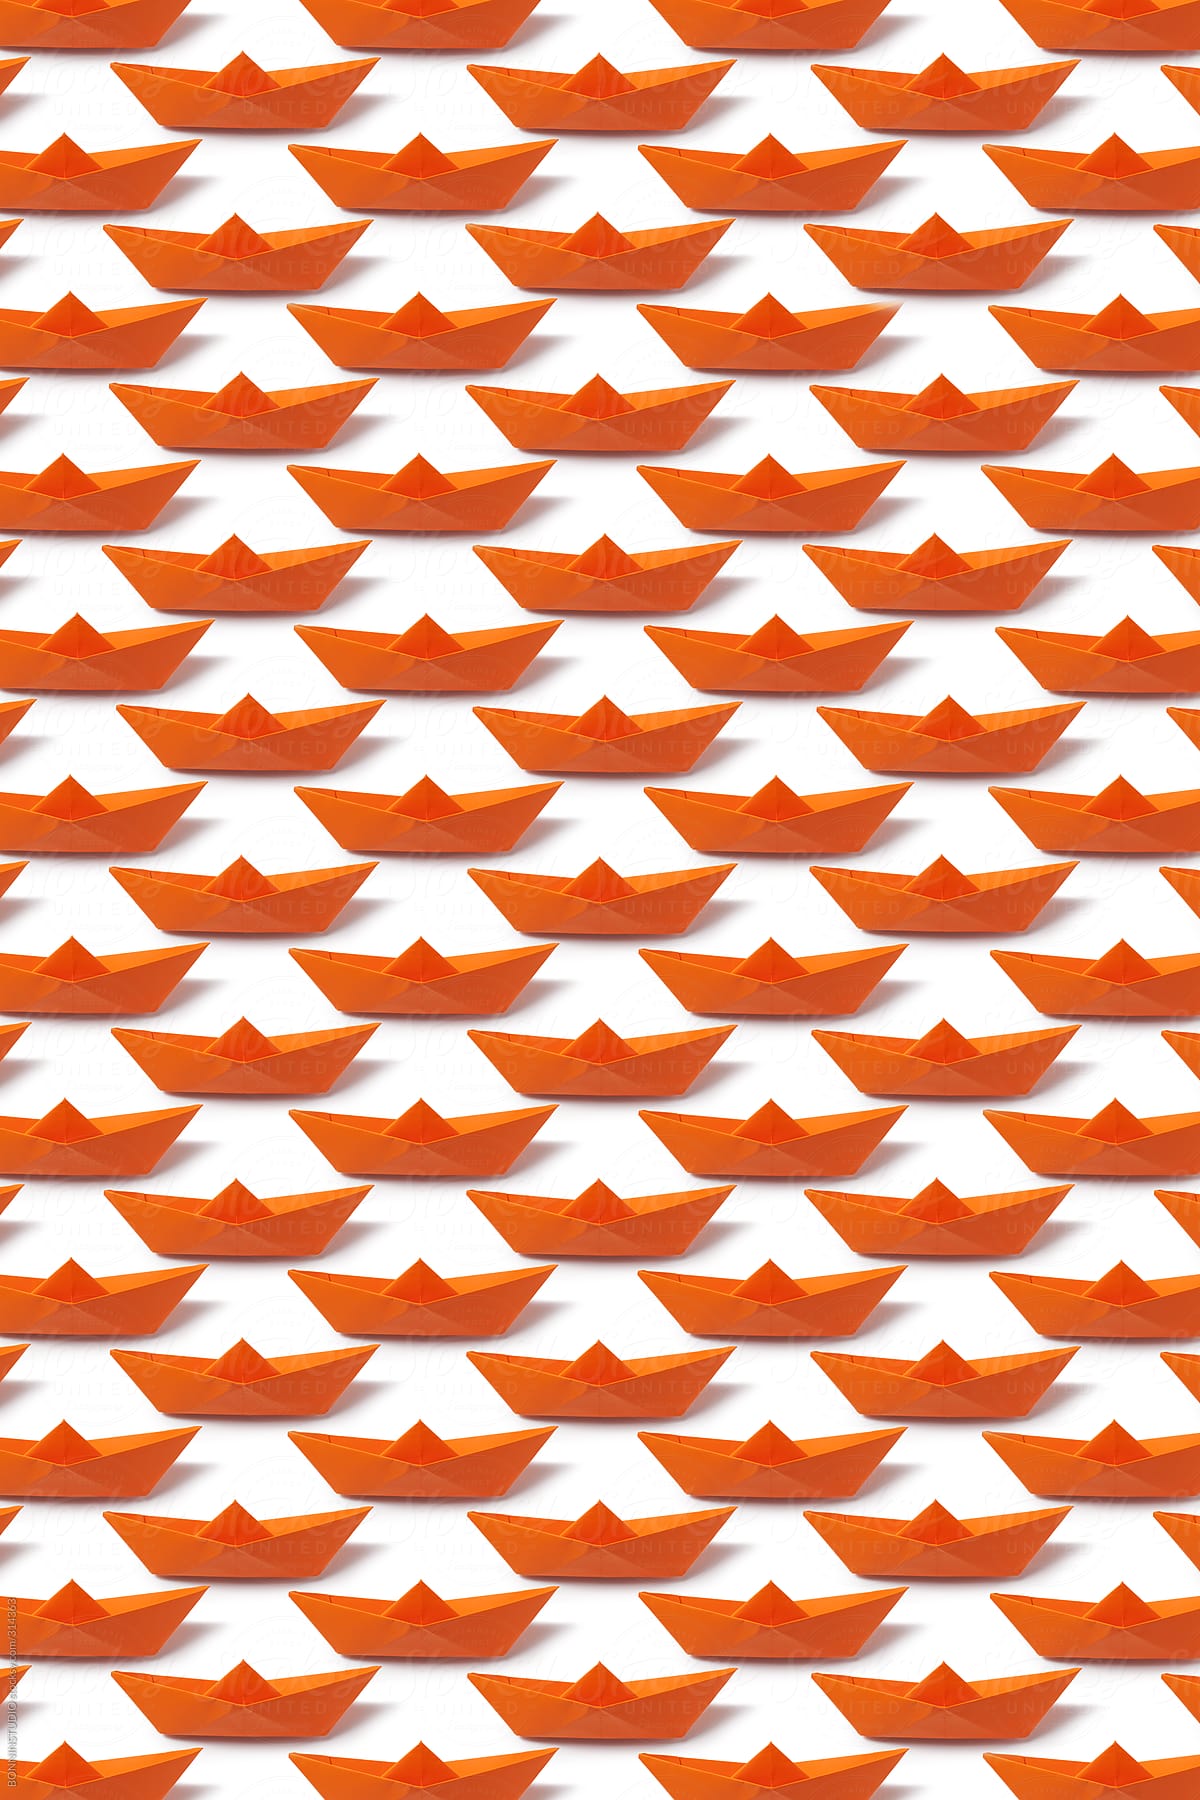 Orange origami boat pattern.